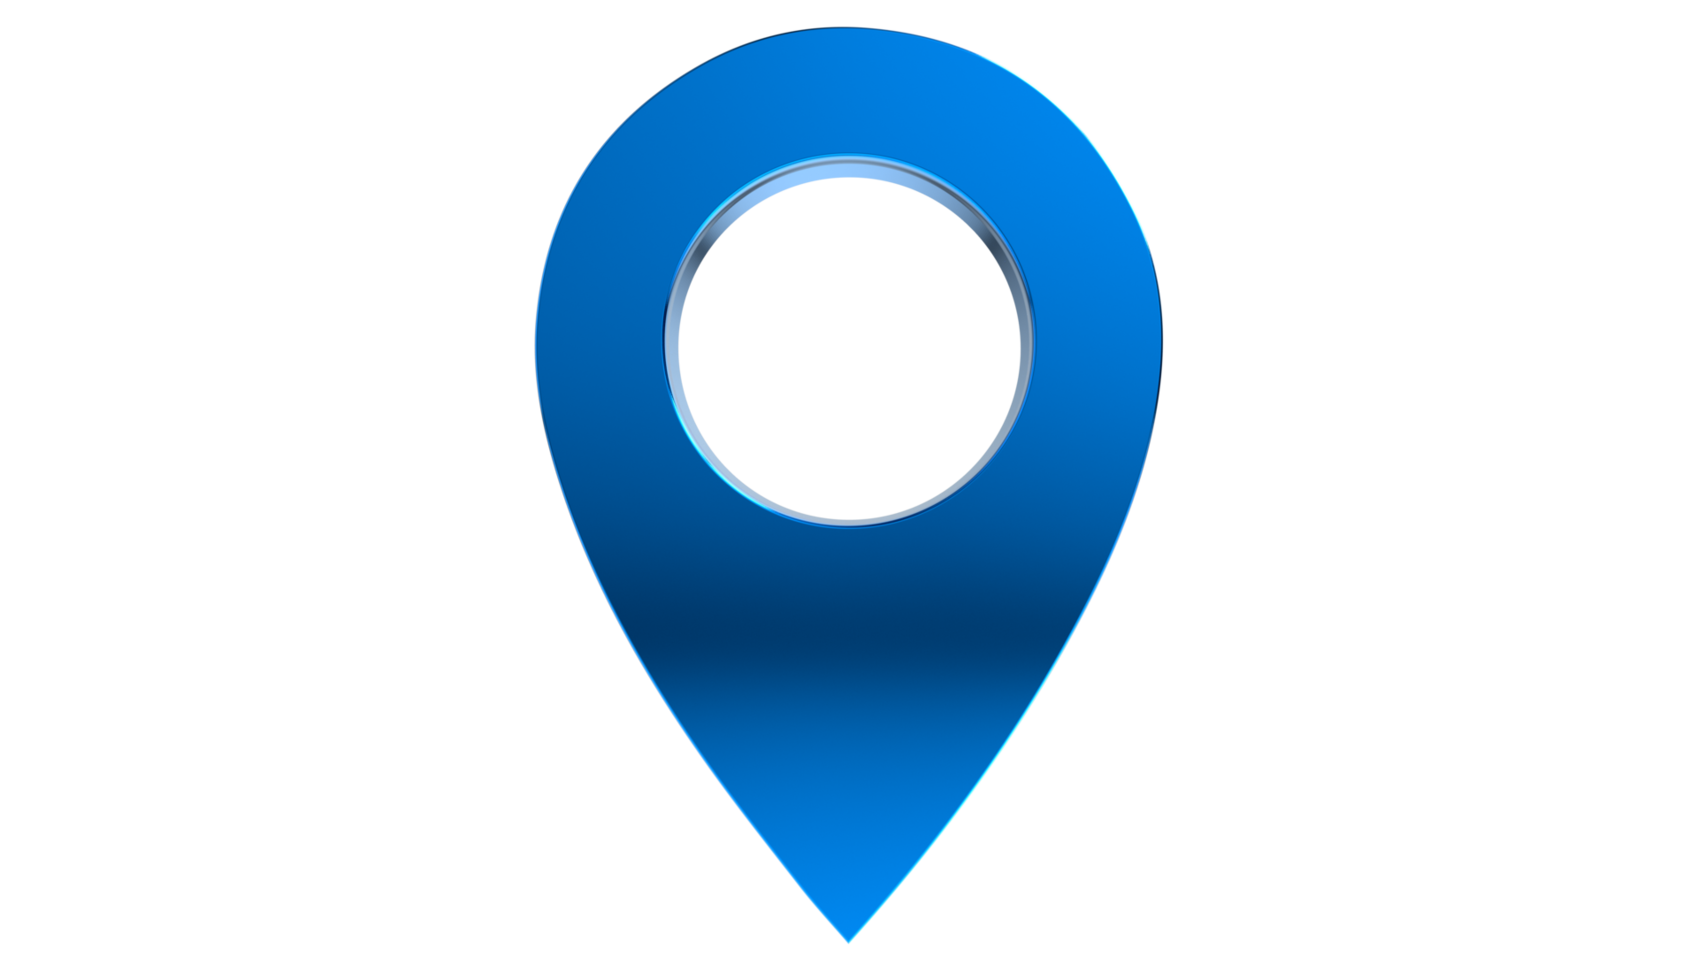 marca de localización del mapa y pin de ubicación en fondo transparente png